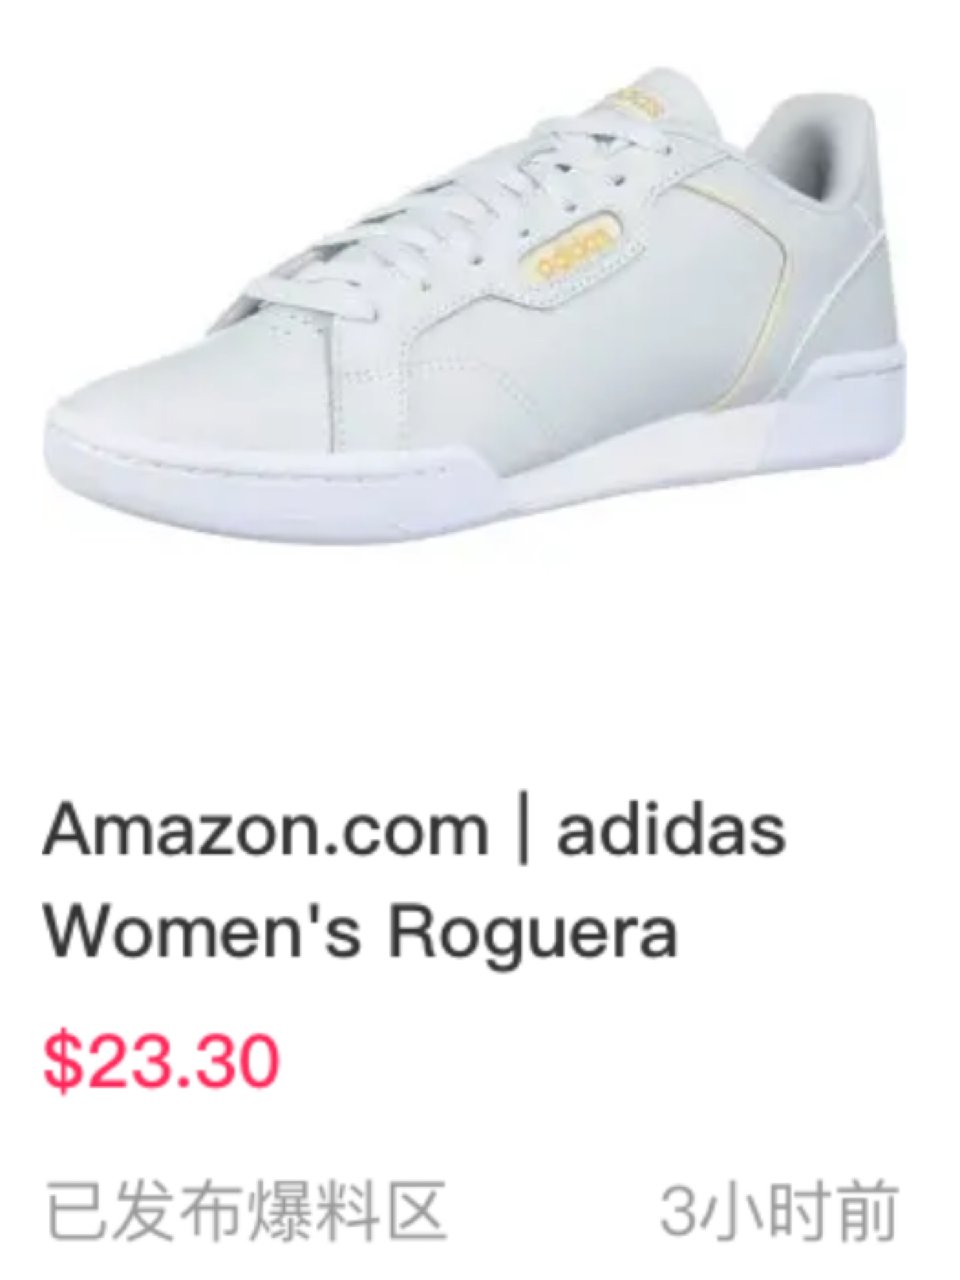 Adidas鞋$23.30